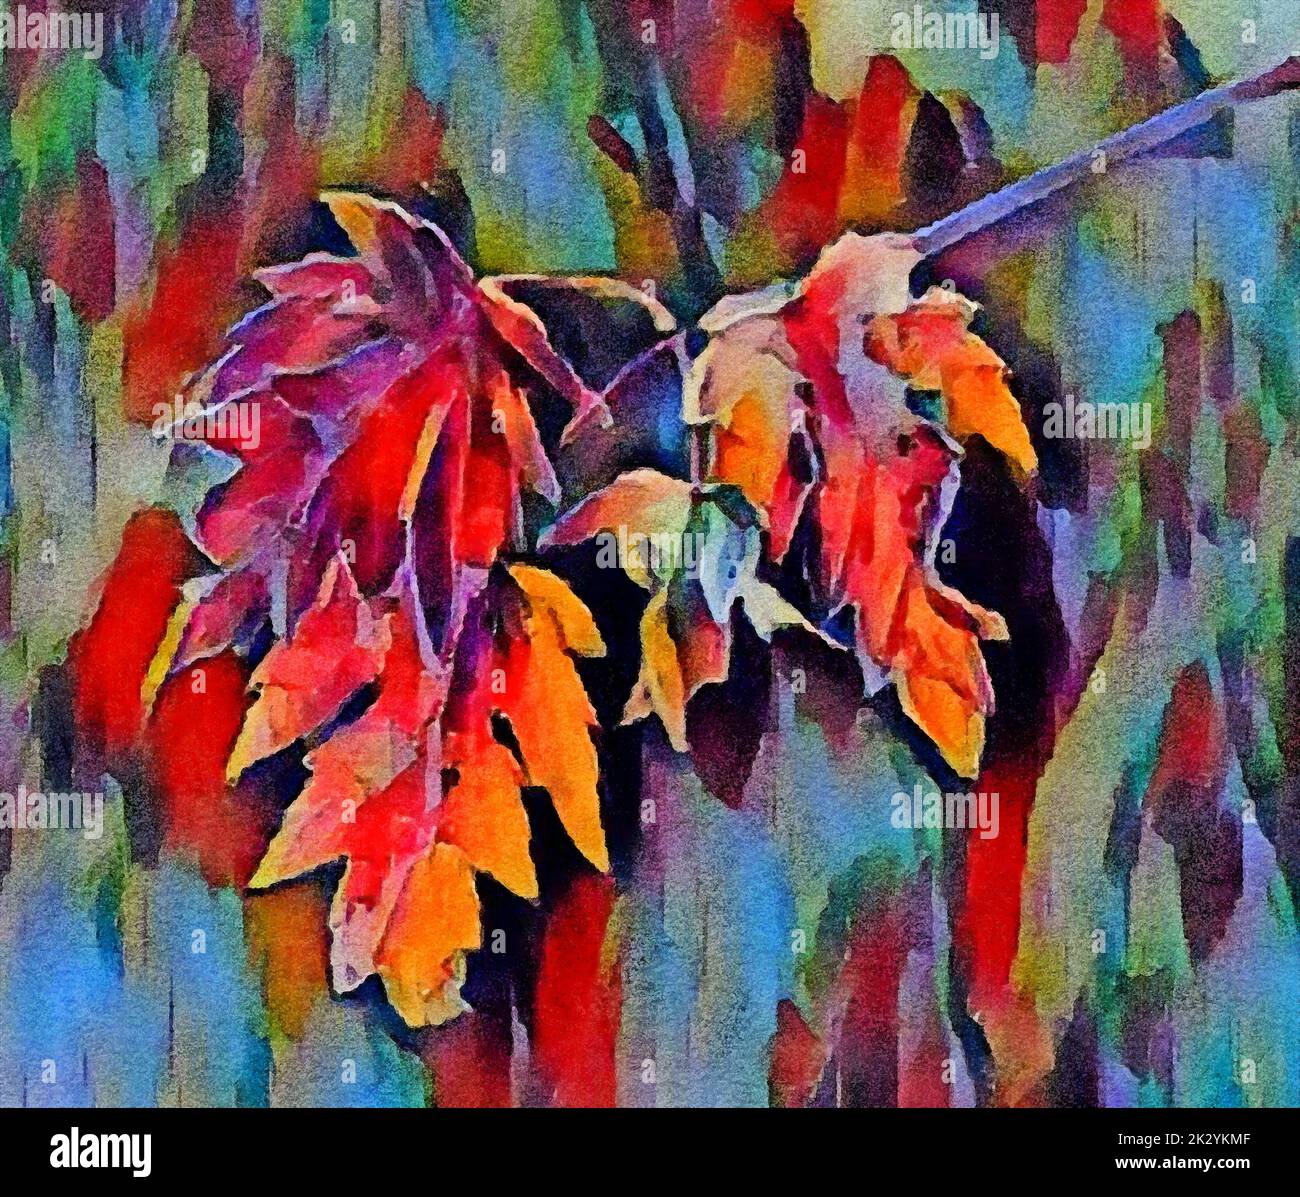 Farbenfrohe Herbstmahornblätter sind in einem Nahaufnahme-Bild zu sehen, das ein digitales Aquarell ist. Stockfoto